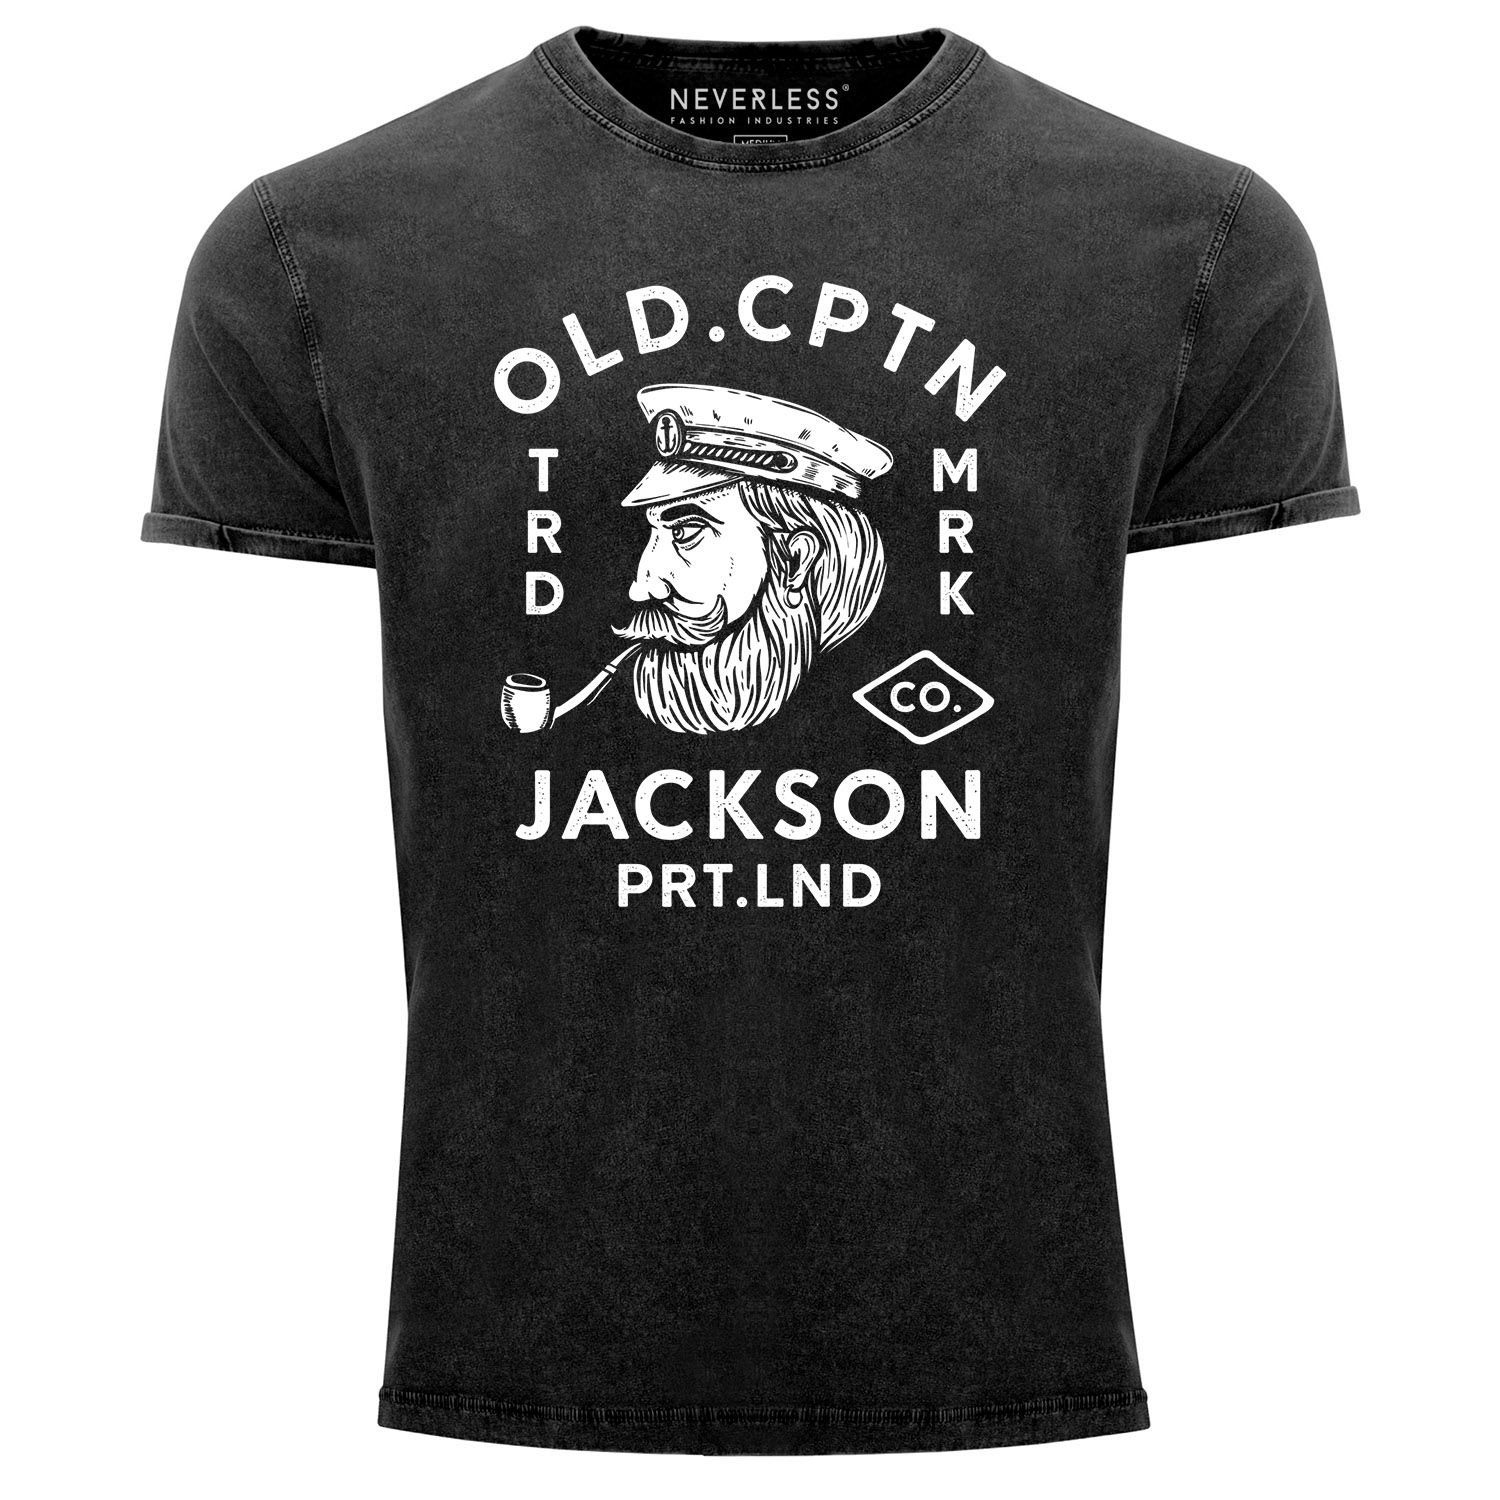 Neverless Print-Shirt Herren Vintage Shirt Kapitän Motiv Aufdruck Old Cptn Jackson Retro Printshirt Used Look Slim Fit Neverless® mit Print schwarz